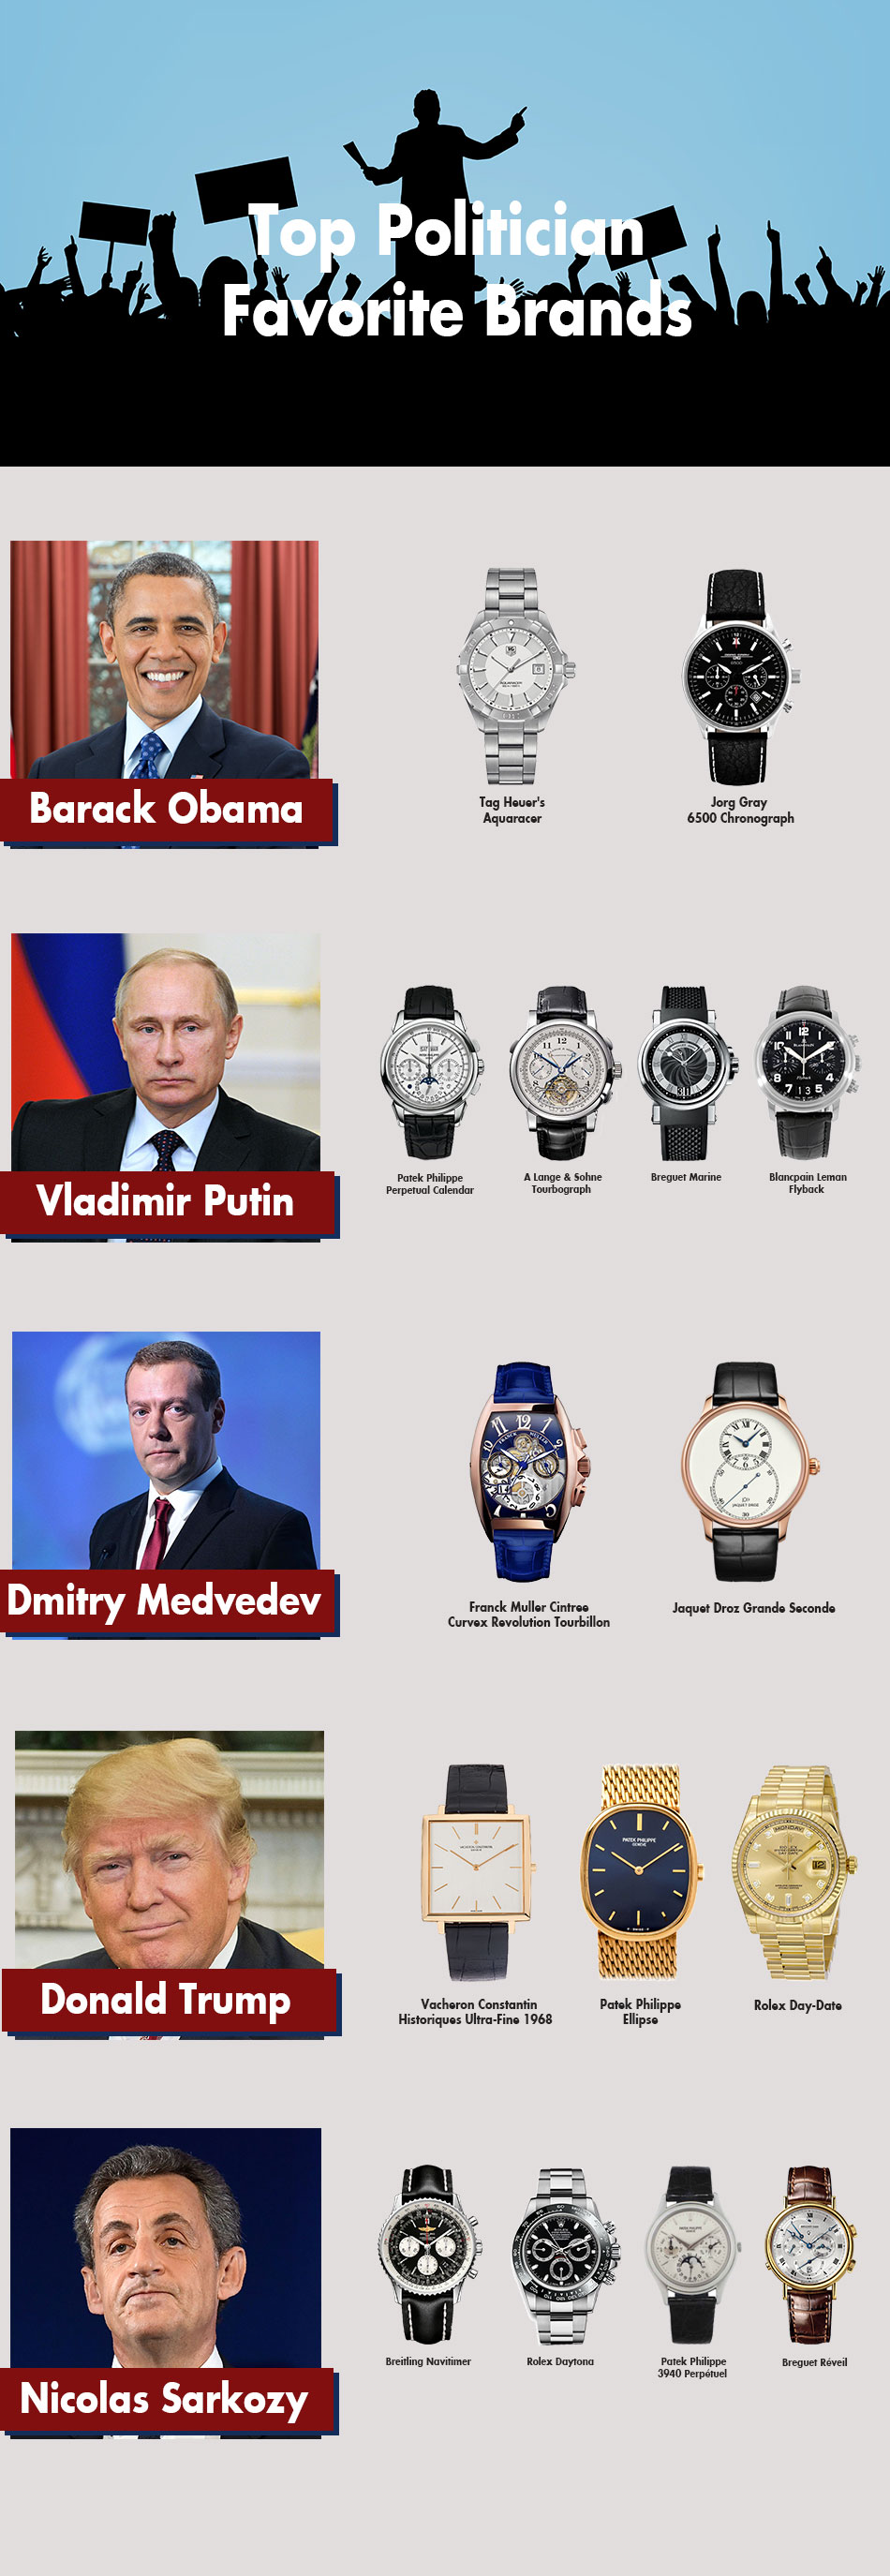 Tìm hiểu những chiếc đồng hồ của các Chính trị gia